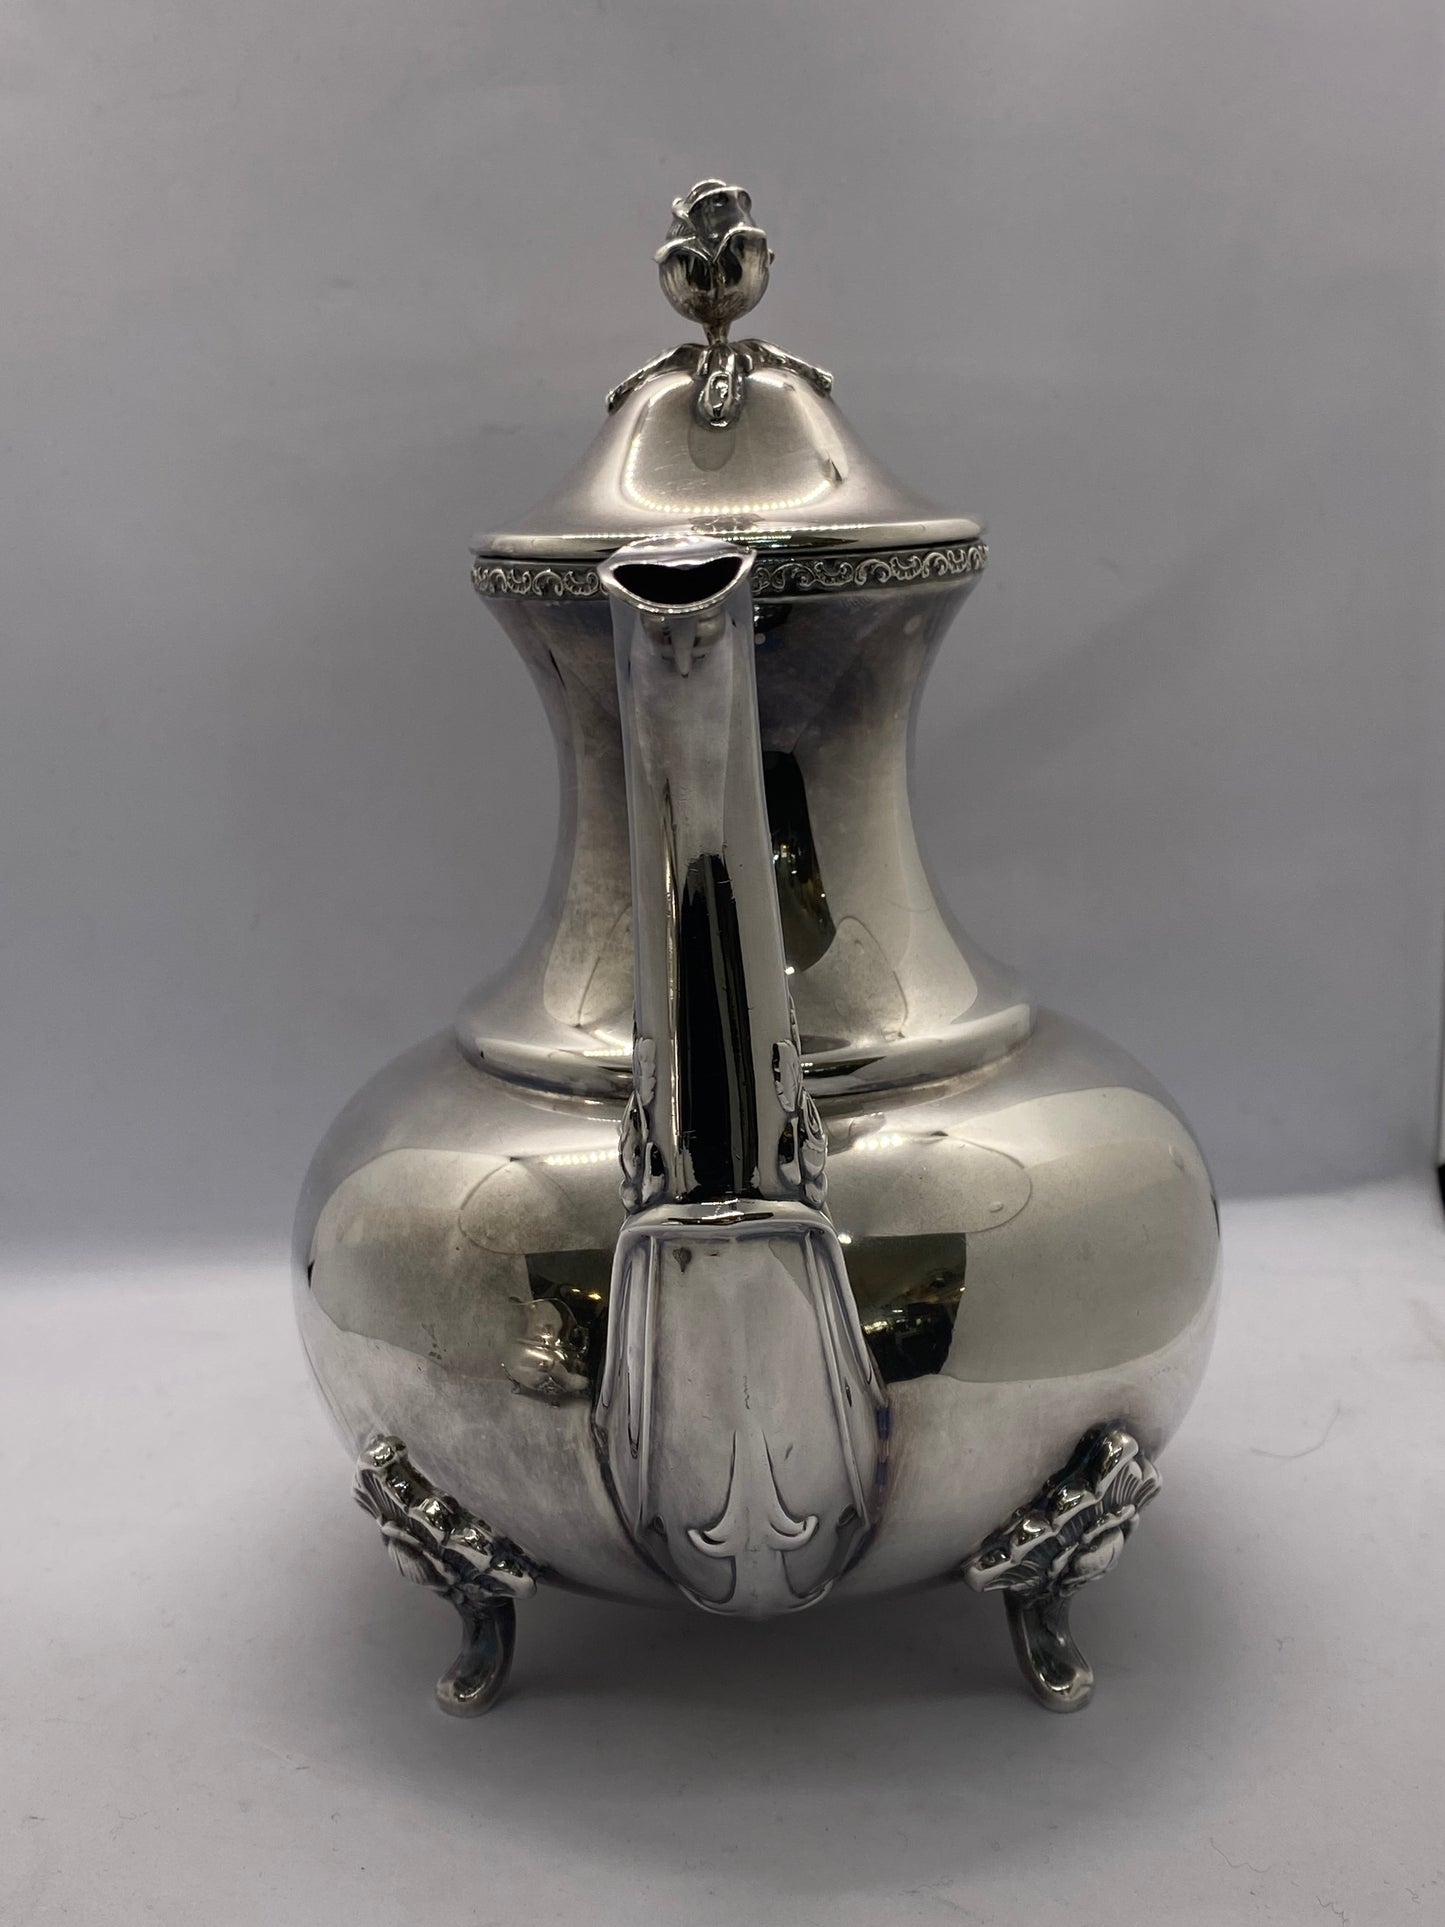 令人惊叹的 4 件套纯银茶具，由 Emil Hermann 制作